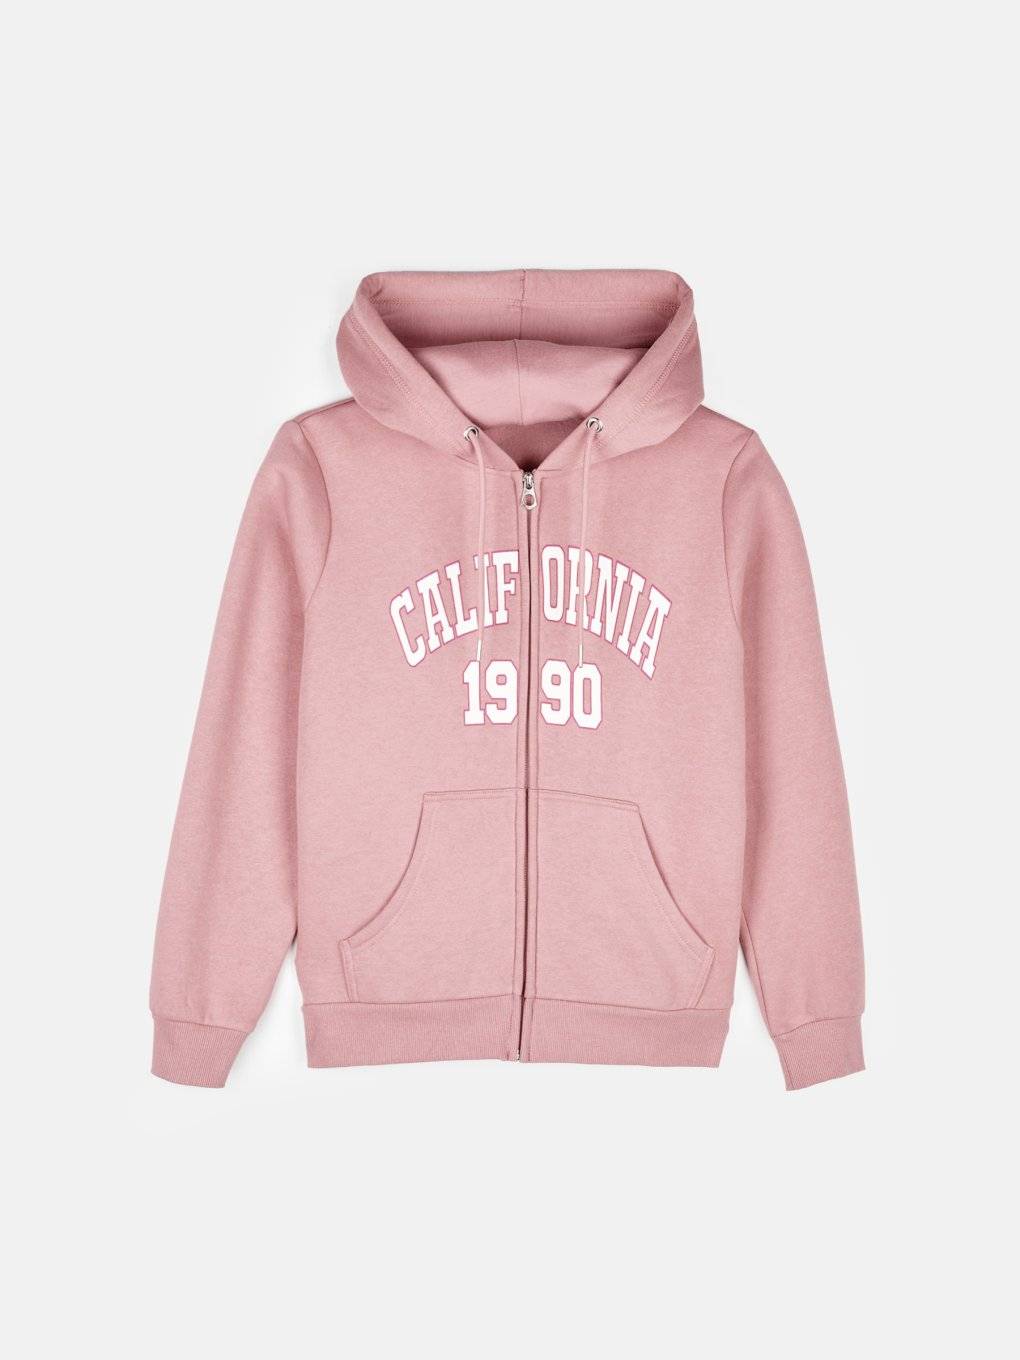 Zip up hoodie with print